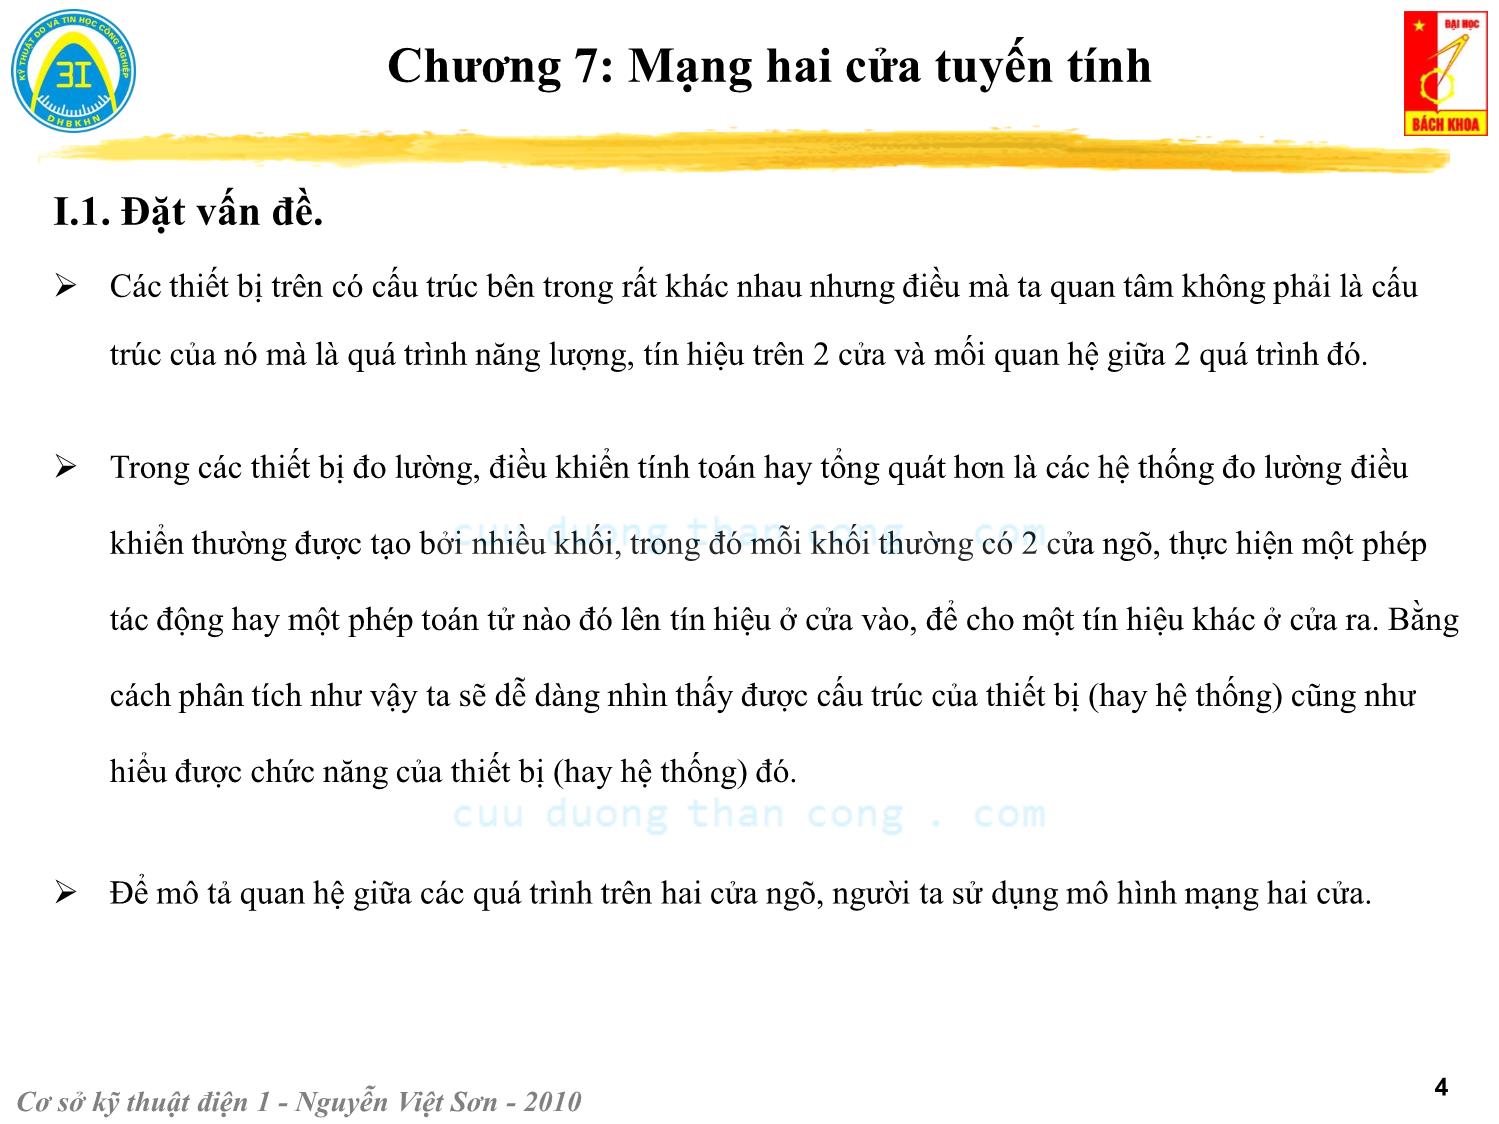 Bài giảng Kỹ thuật điện 1 - Chương 7: Mạng hai cửa tuyến tính - Nguyễn Việt Sơn trang 4